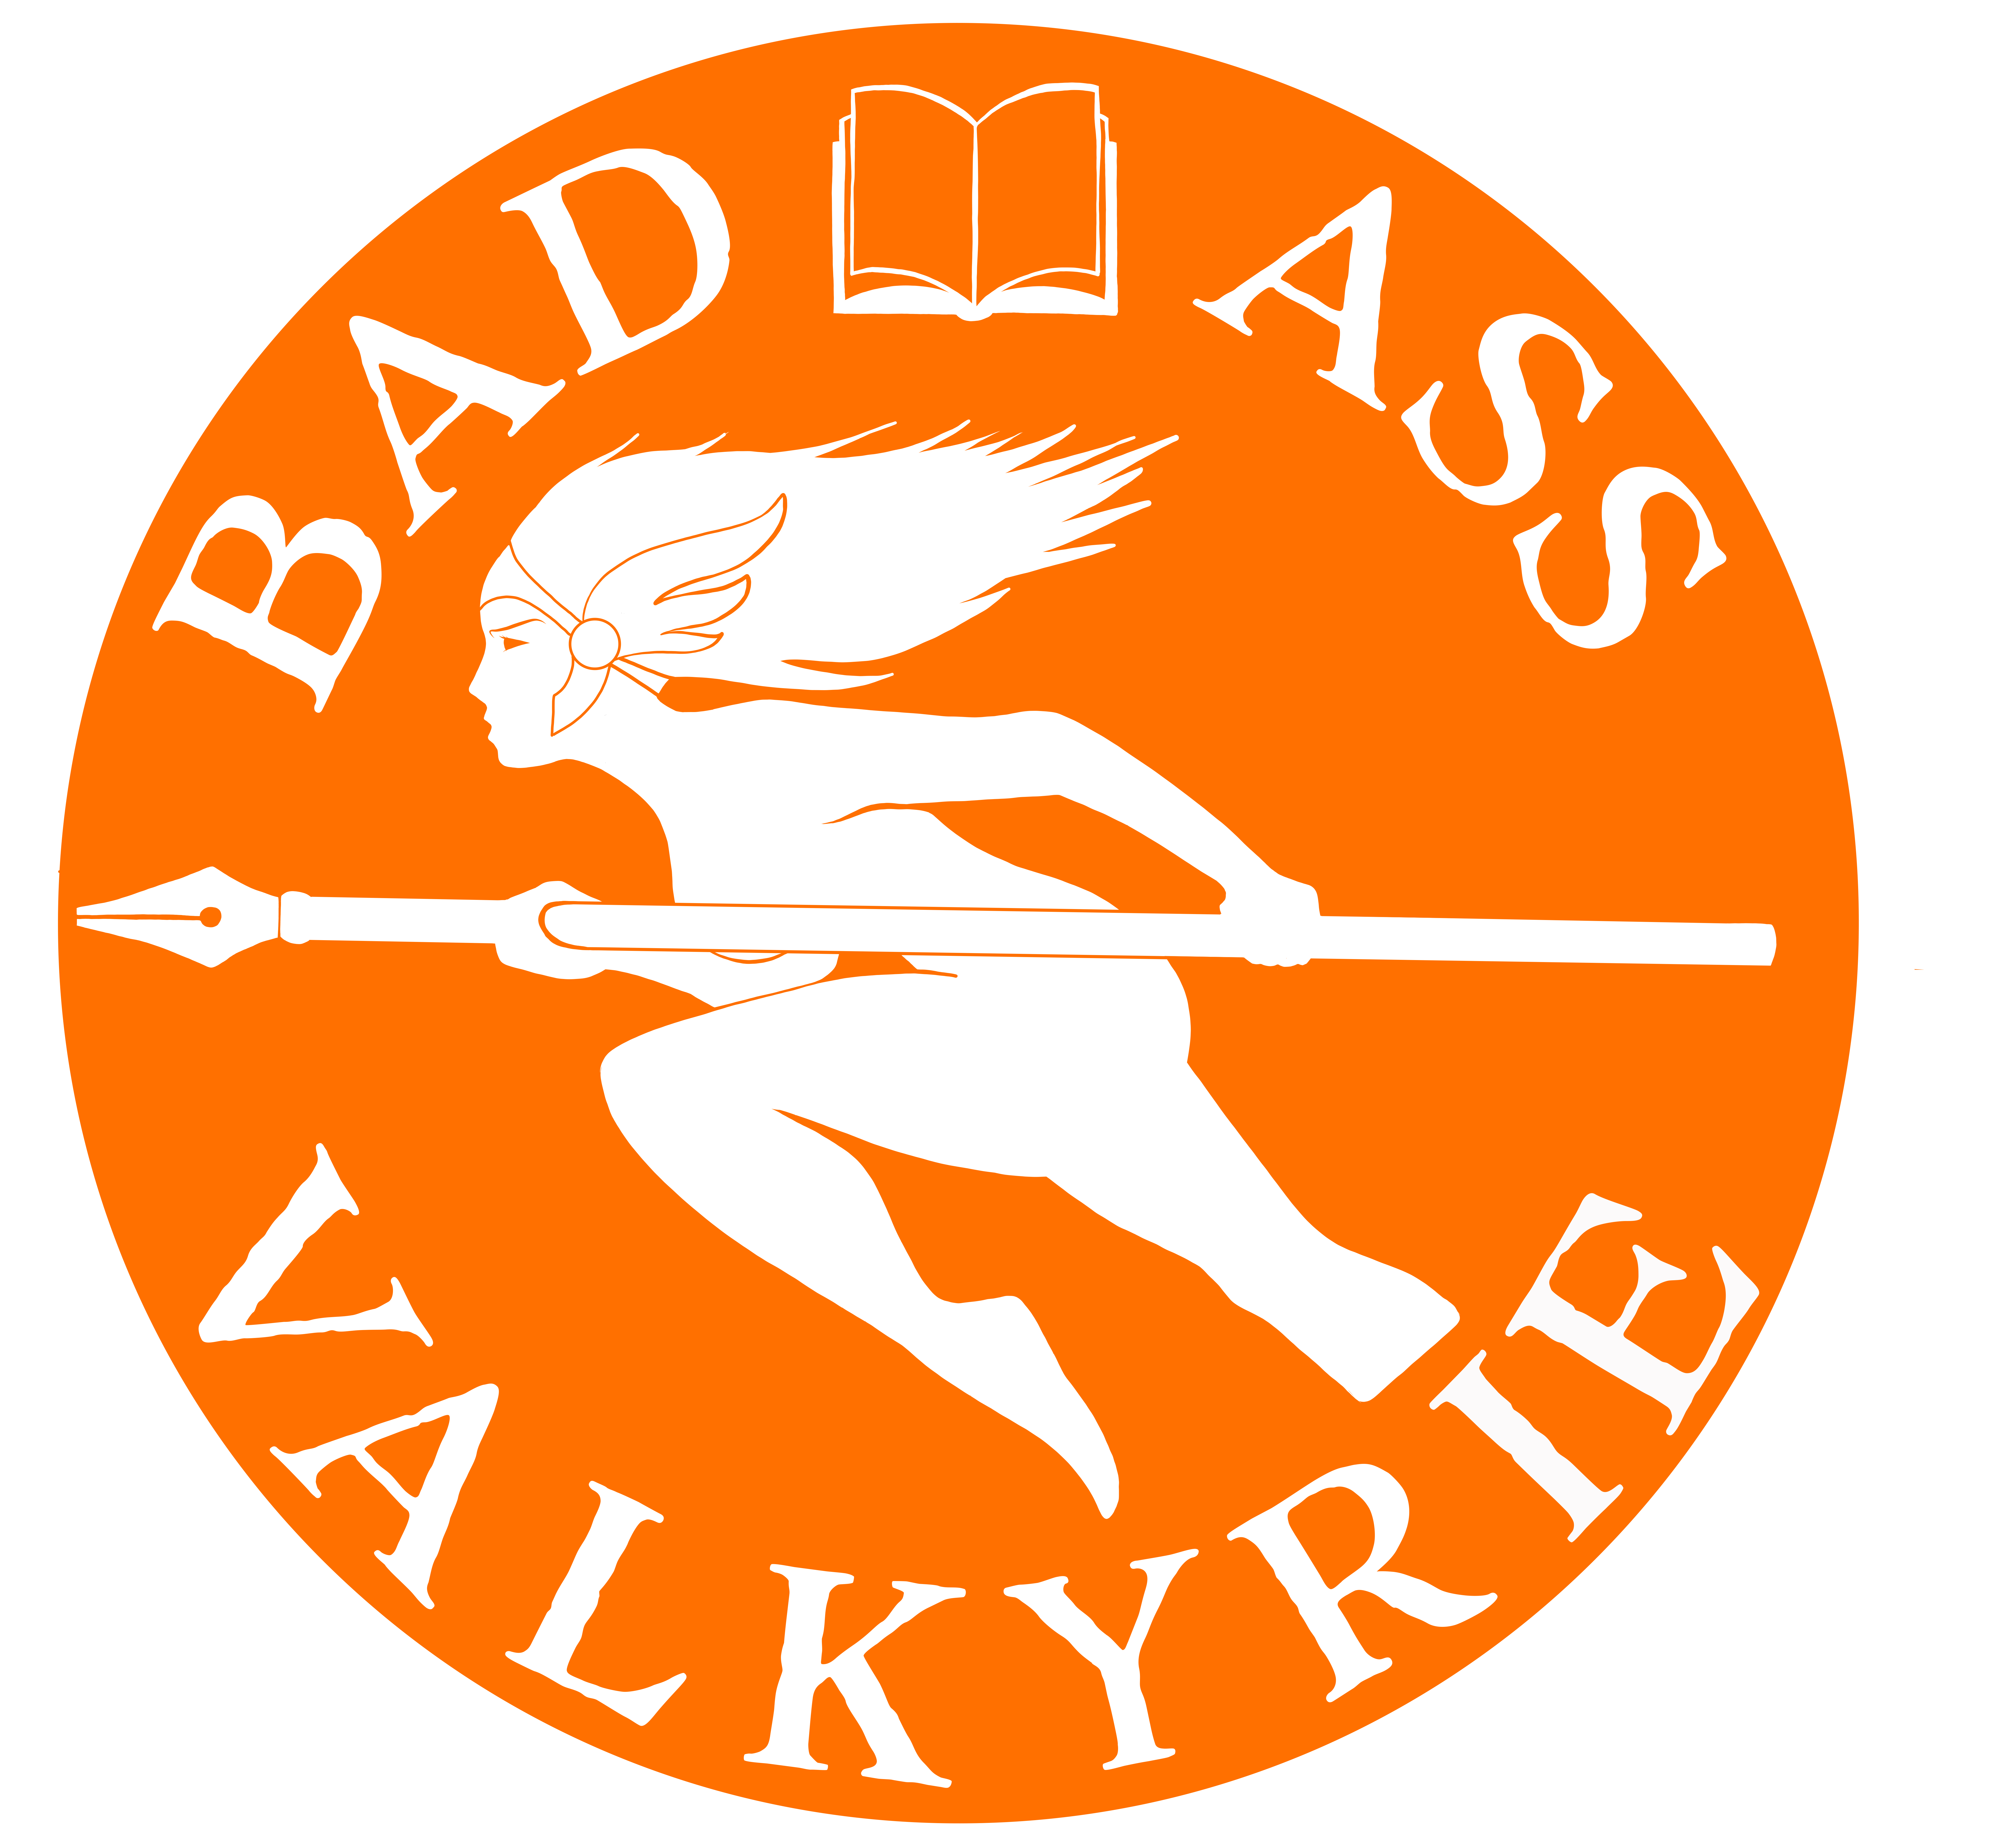 The Badass Valkyrie